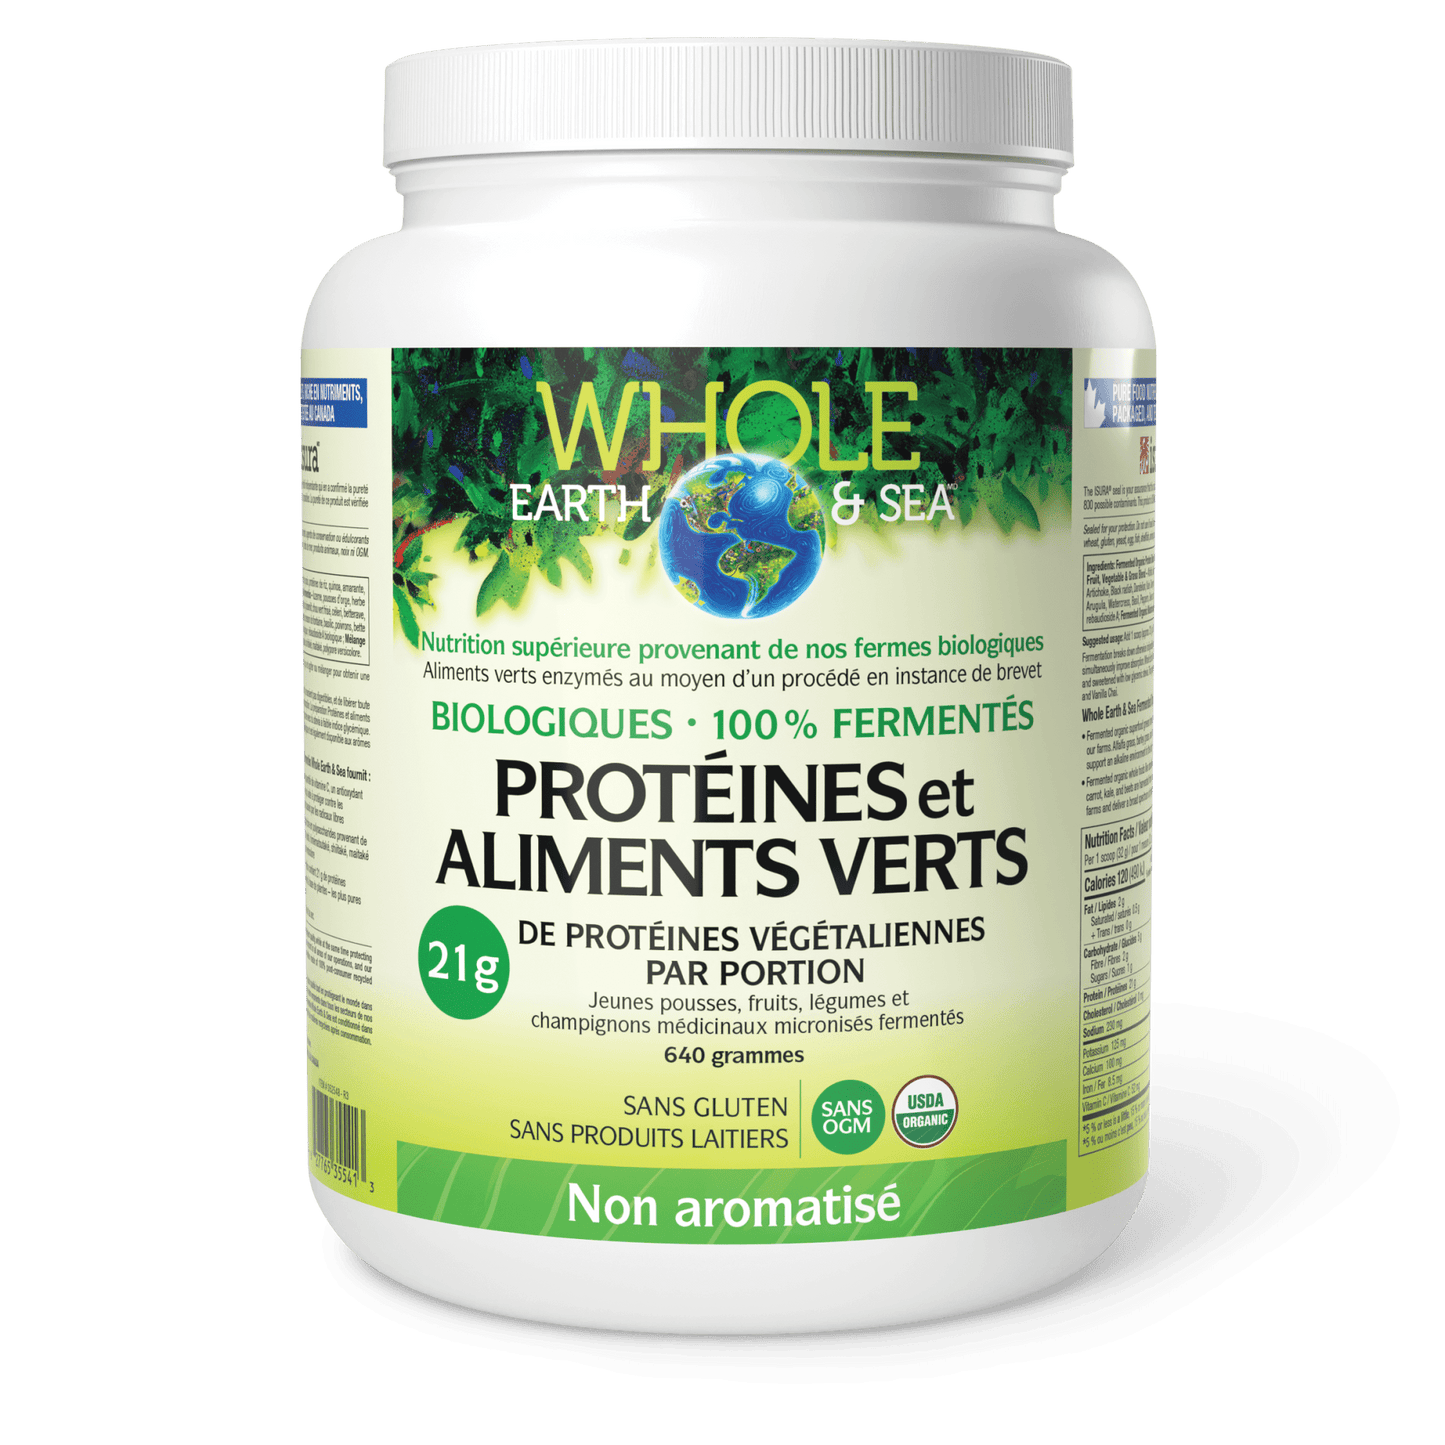 Protéines et aliments verts biologiques fermentés, non aromatisé, Whole Earth & Sea, Whole Earth & Sea®|v|image|35541